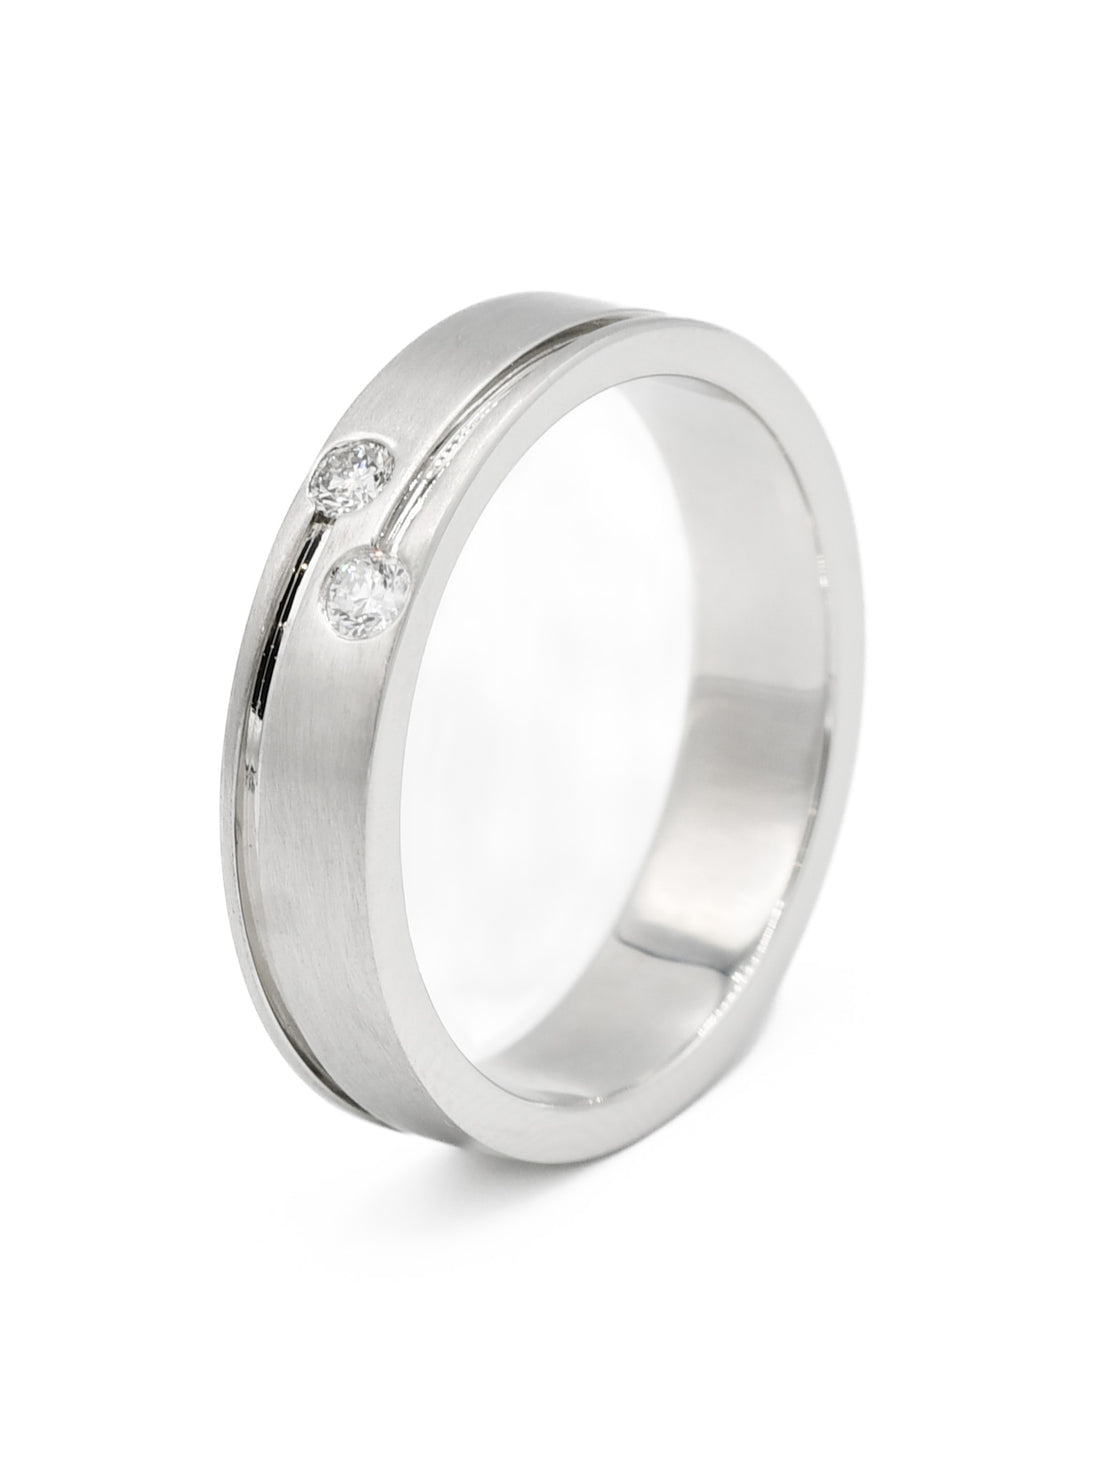 950 Platinum 0.11ct Diamond Mens Ring - Roop Darshan